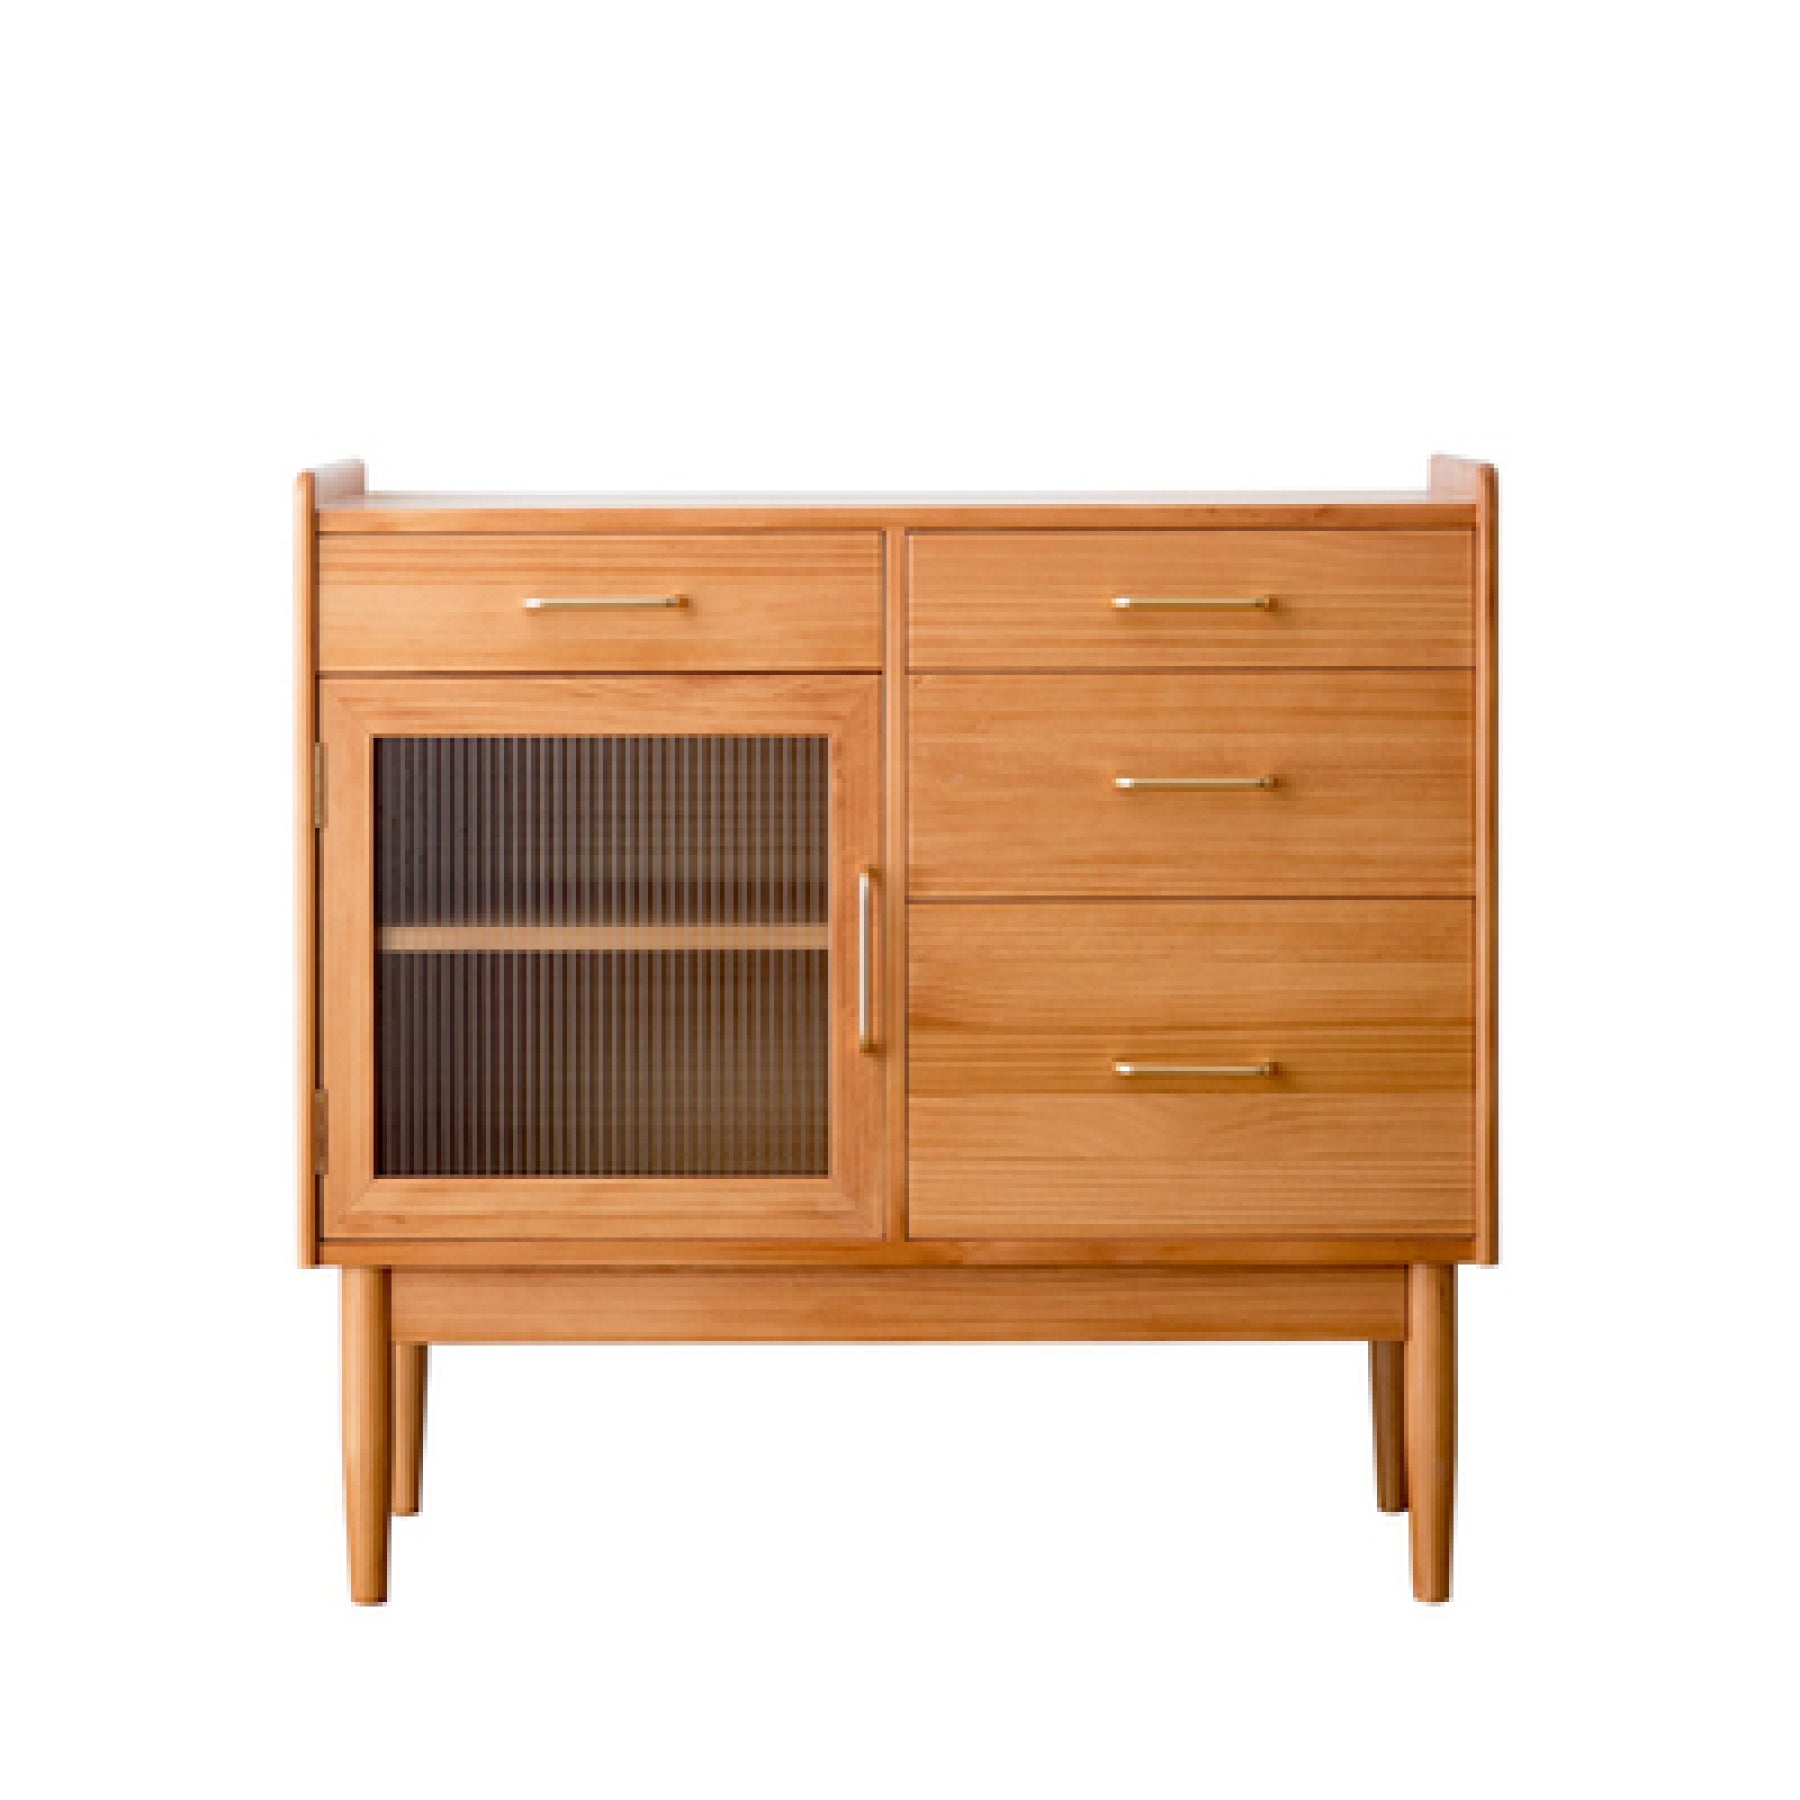 Tom Pine Wood Kitchen Storage Cabinet III